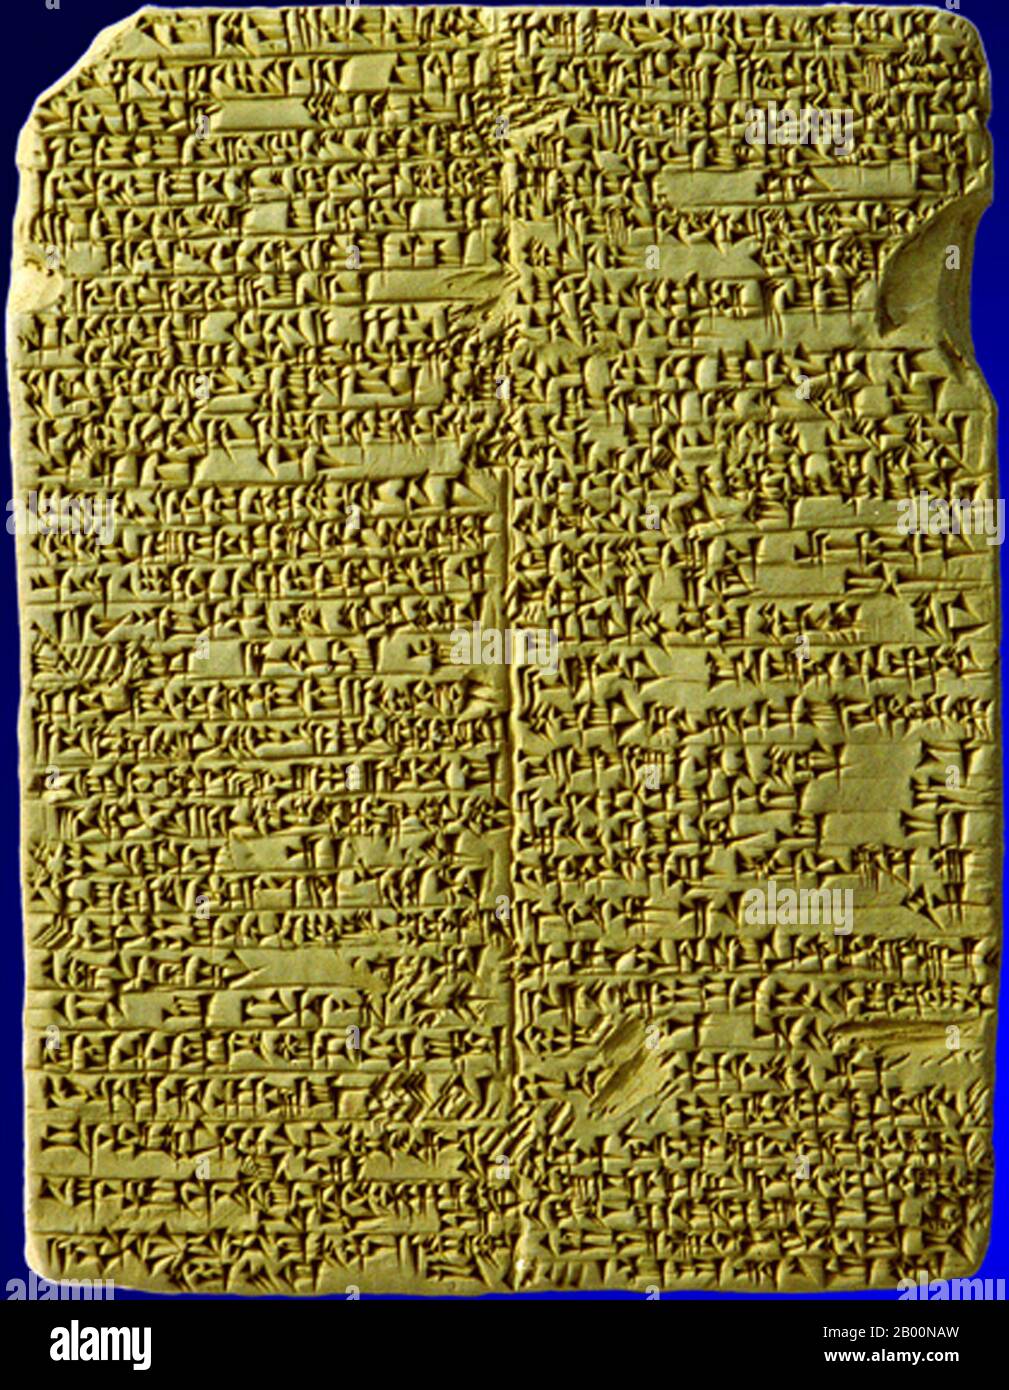 Irak: Akkadian Keilschrift über die Geschichte von Sargon von Akkad (c. 23. – 22. Jahrhundert v. Chr.). Akkadisch ist eine ausgestorbene semitische Sprache (Teil der größeren afroasiatischen Sprachfamilie), die im alten Mesopotamien gesprochen wurde. Die früheste bezeugte semitische Sprache, es verwendet die Keilschrift-System abgeleitet letztlich aus dem alten sumerischen, eine nicht verwandte Sprache zu isolieren. Der Name der Sprache leitet sich von der Stadt Akkad ab, einem wichtigen Zentrum der mesopotamischen Zivilisation. Stockfoto